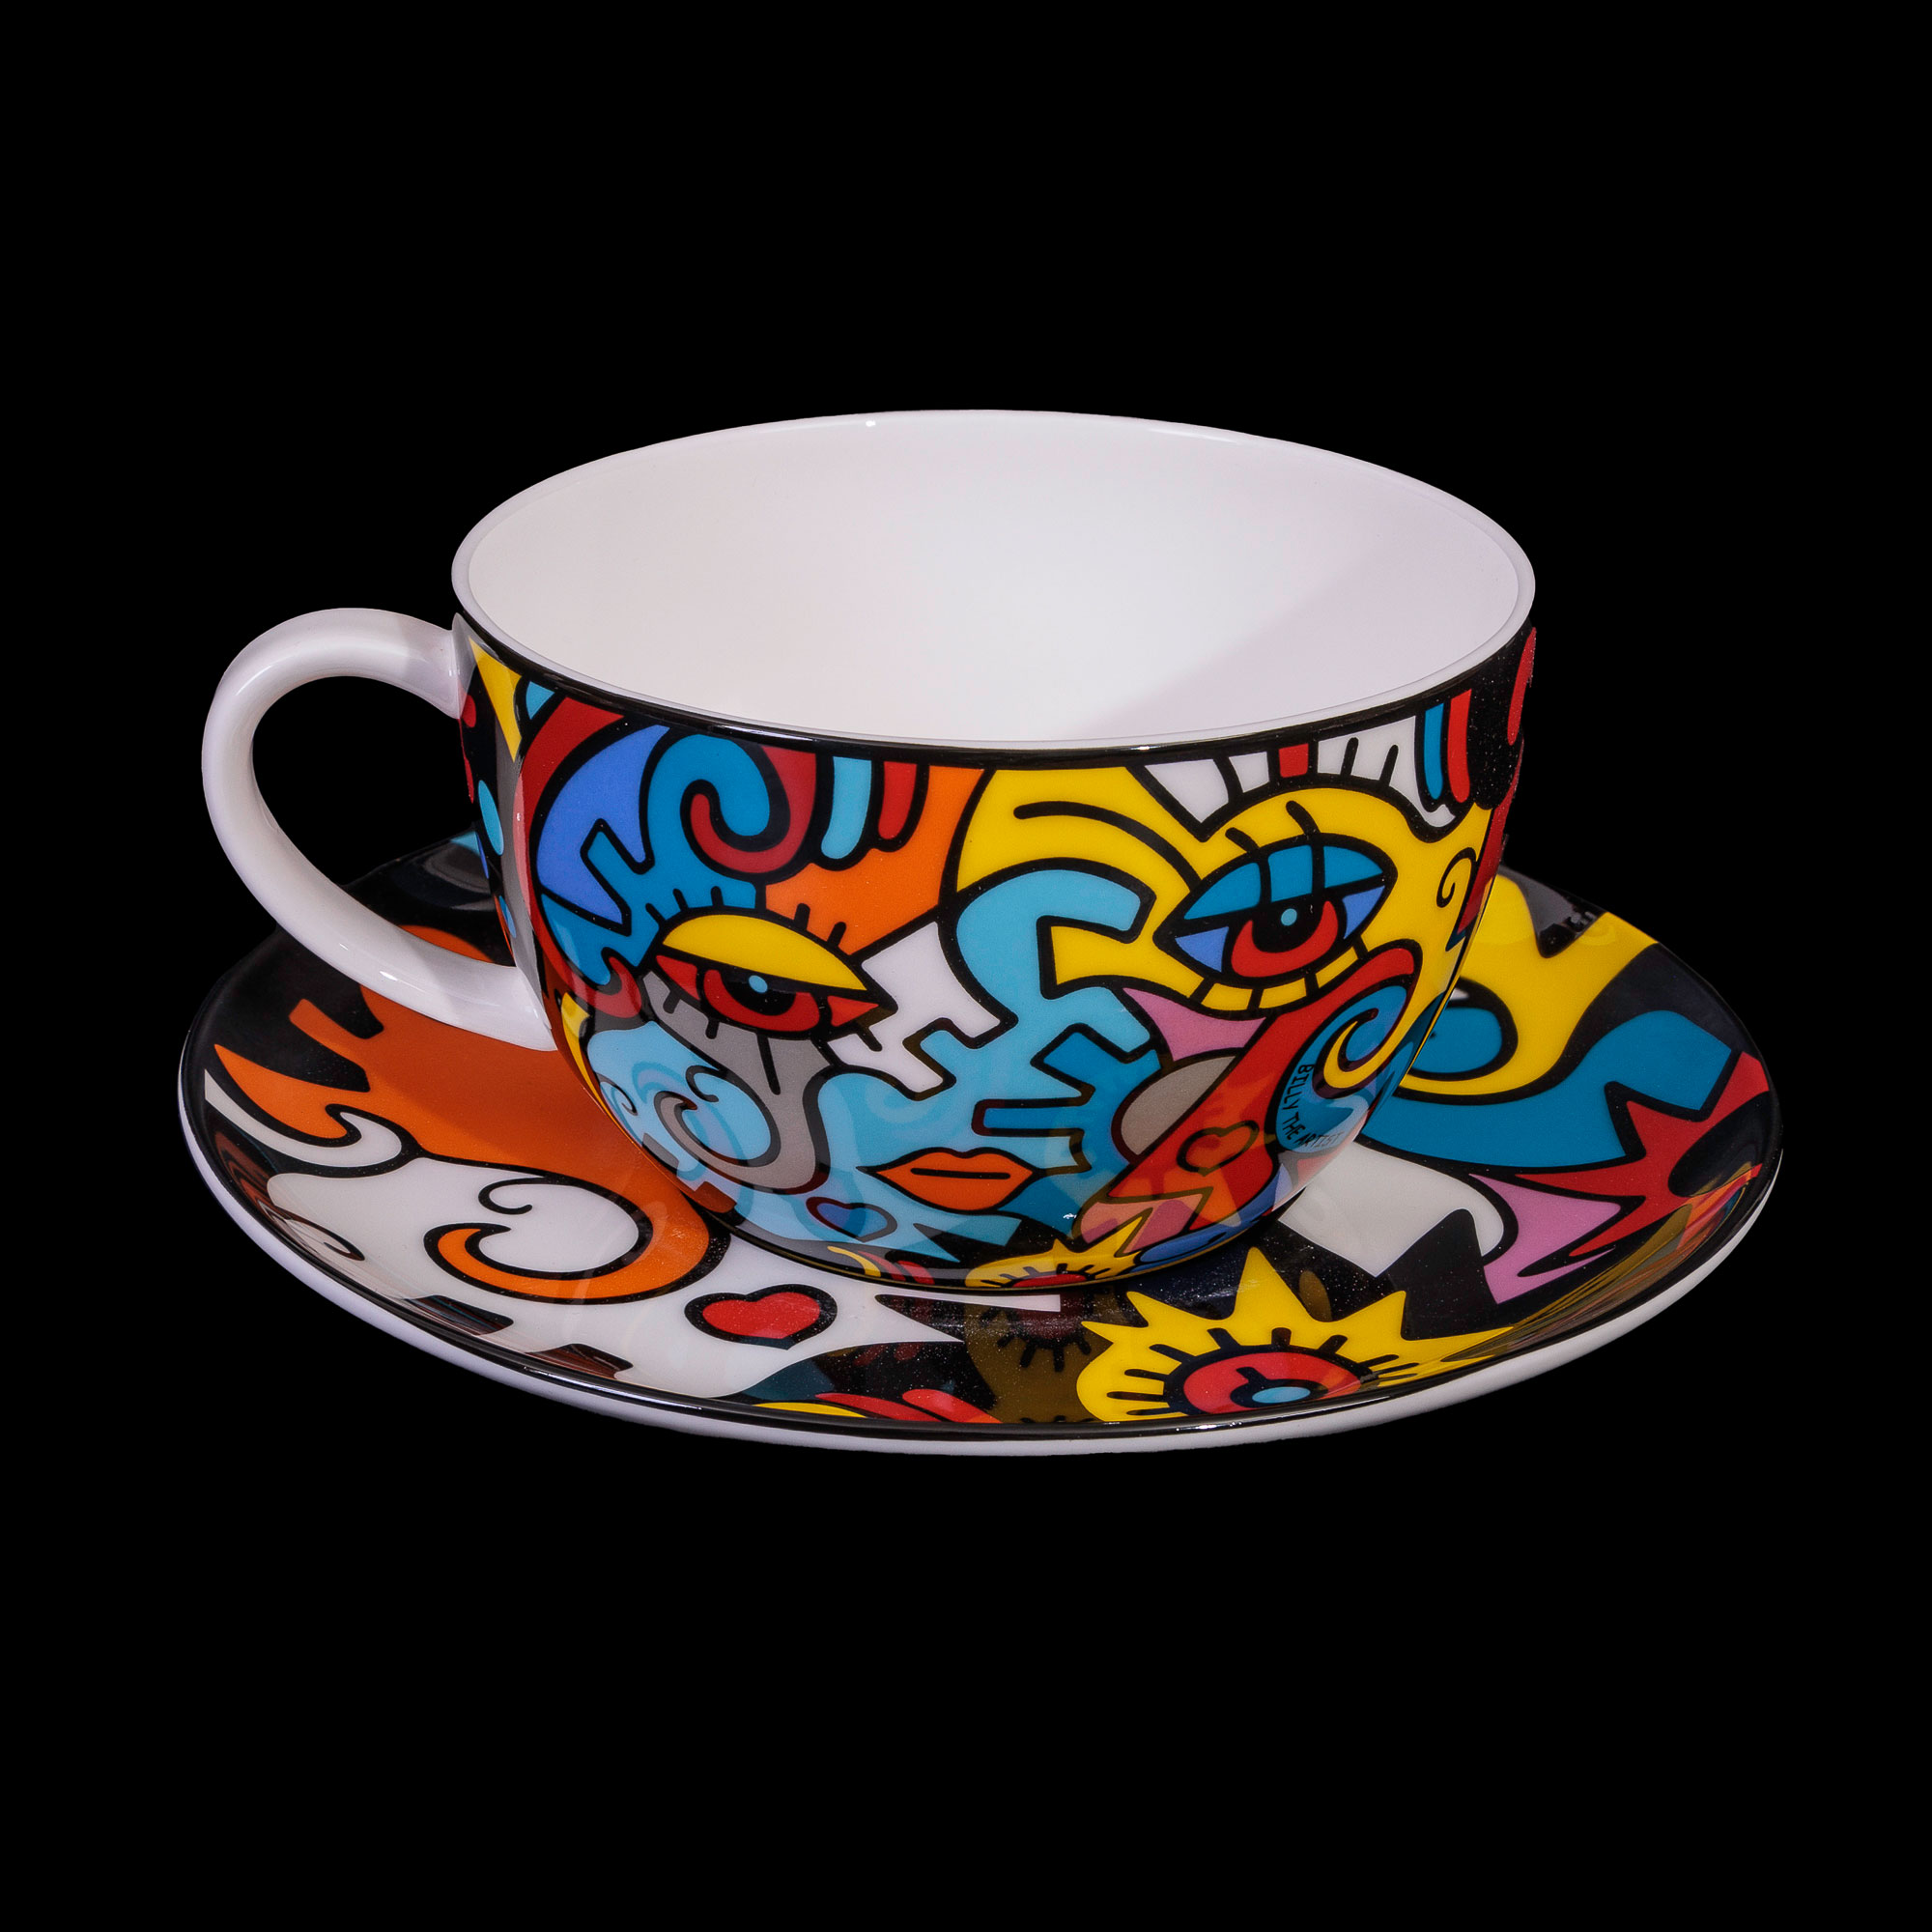 teacup : Billy Artist saucer Together the big (Goebel) and